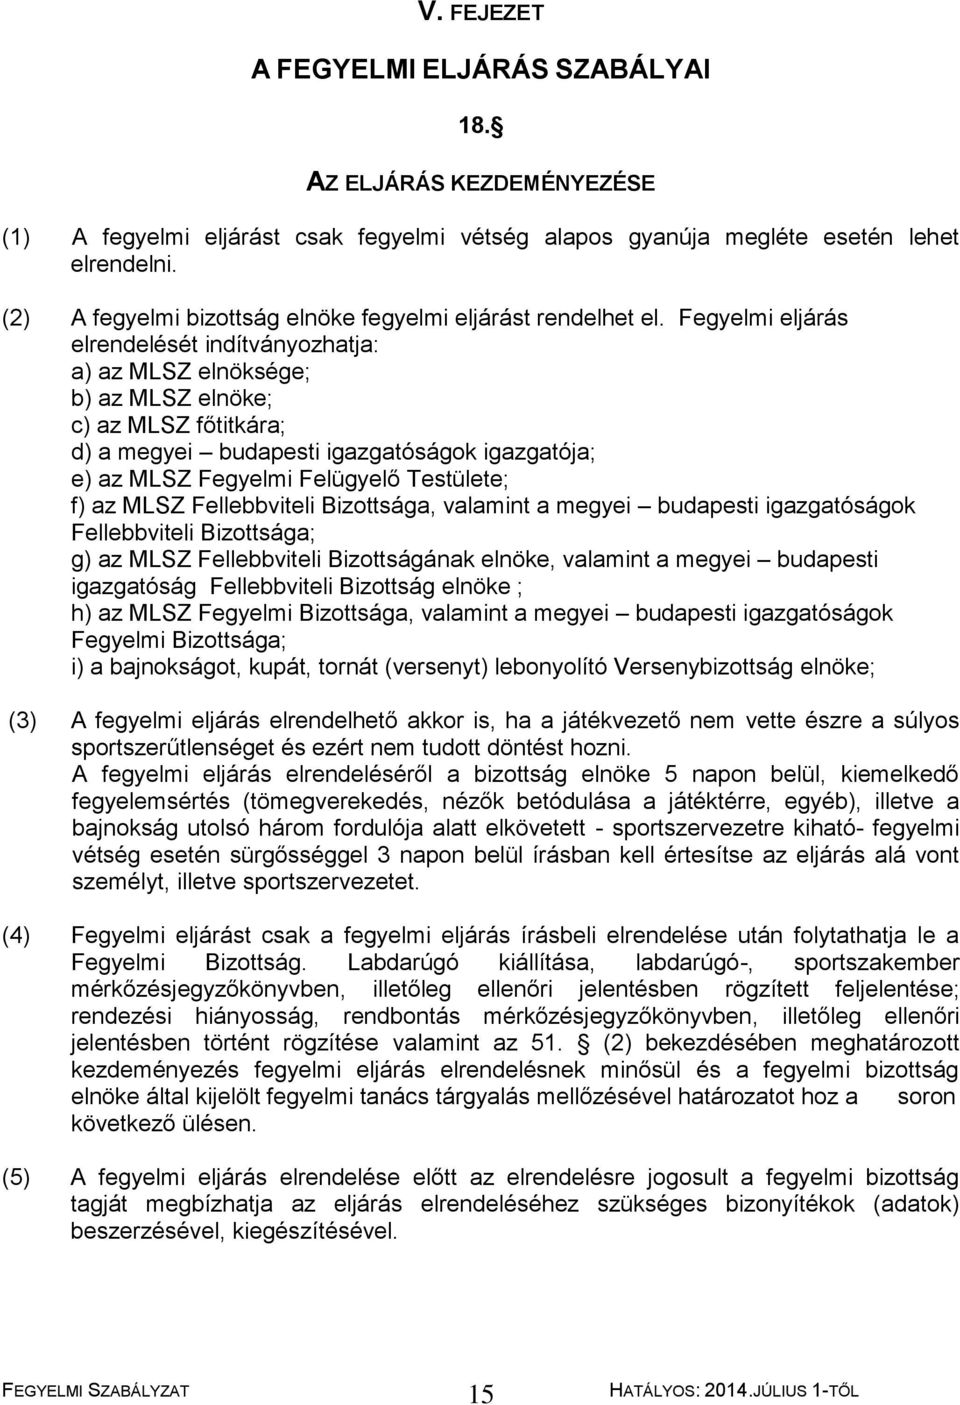 Magyar Labdarúgó Szövetség FEGYELMI SZABÁLYZAT - PDF Ingyenes letöltés